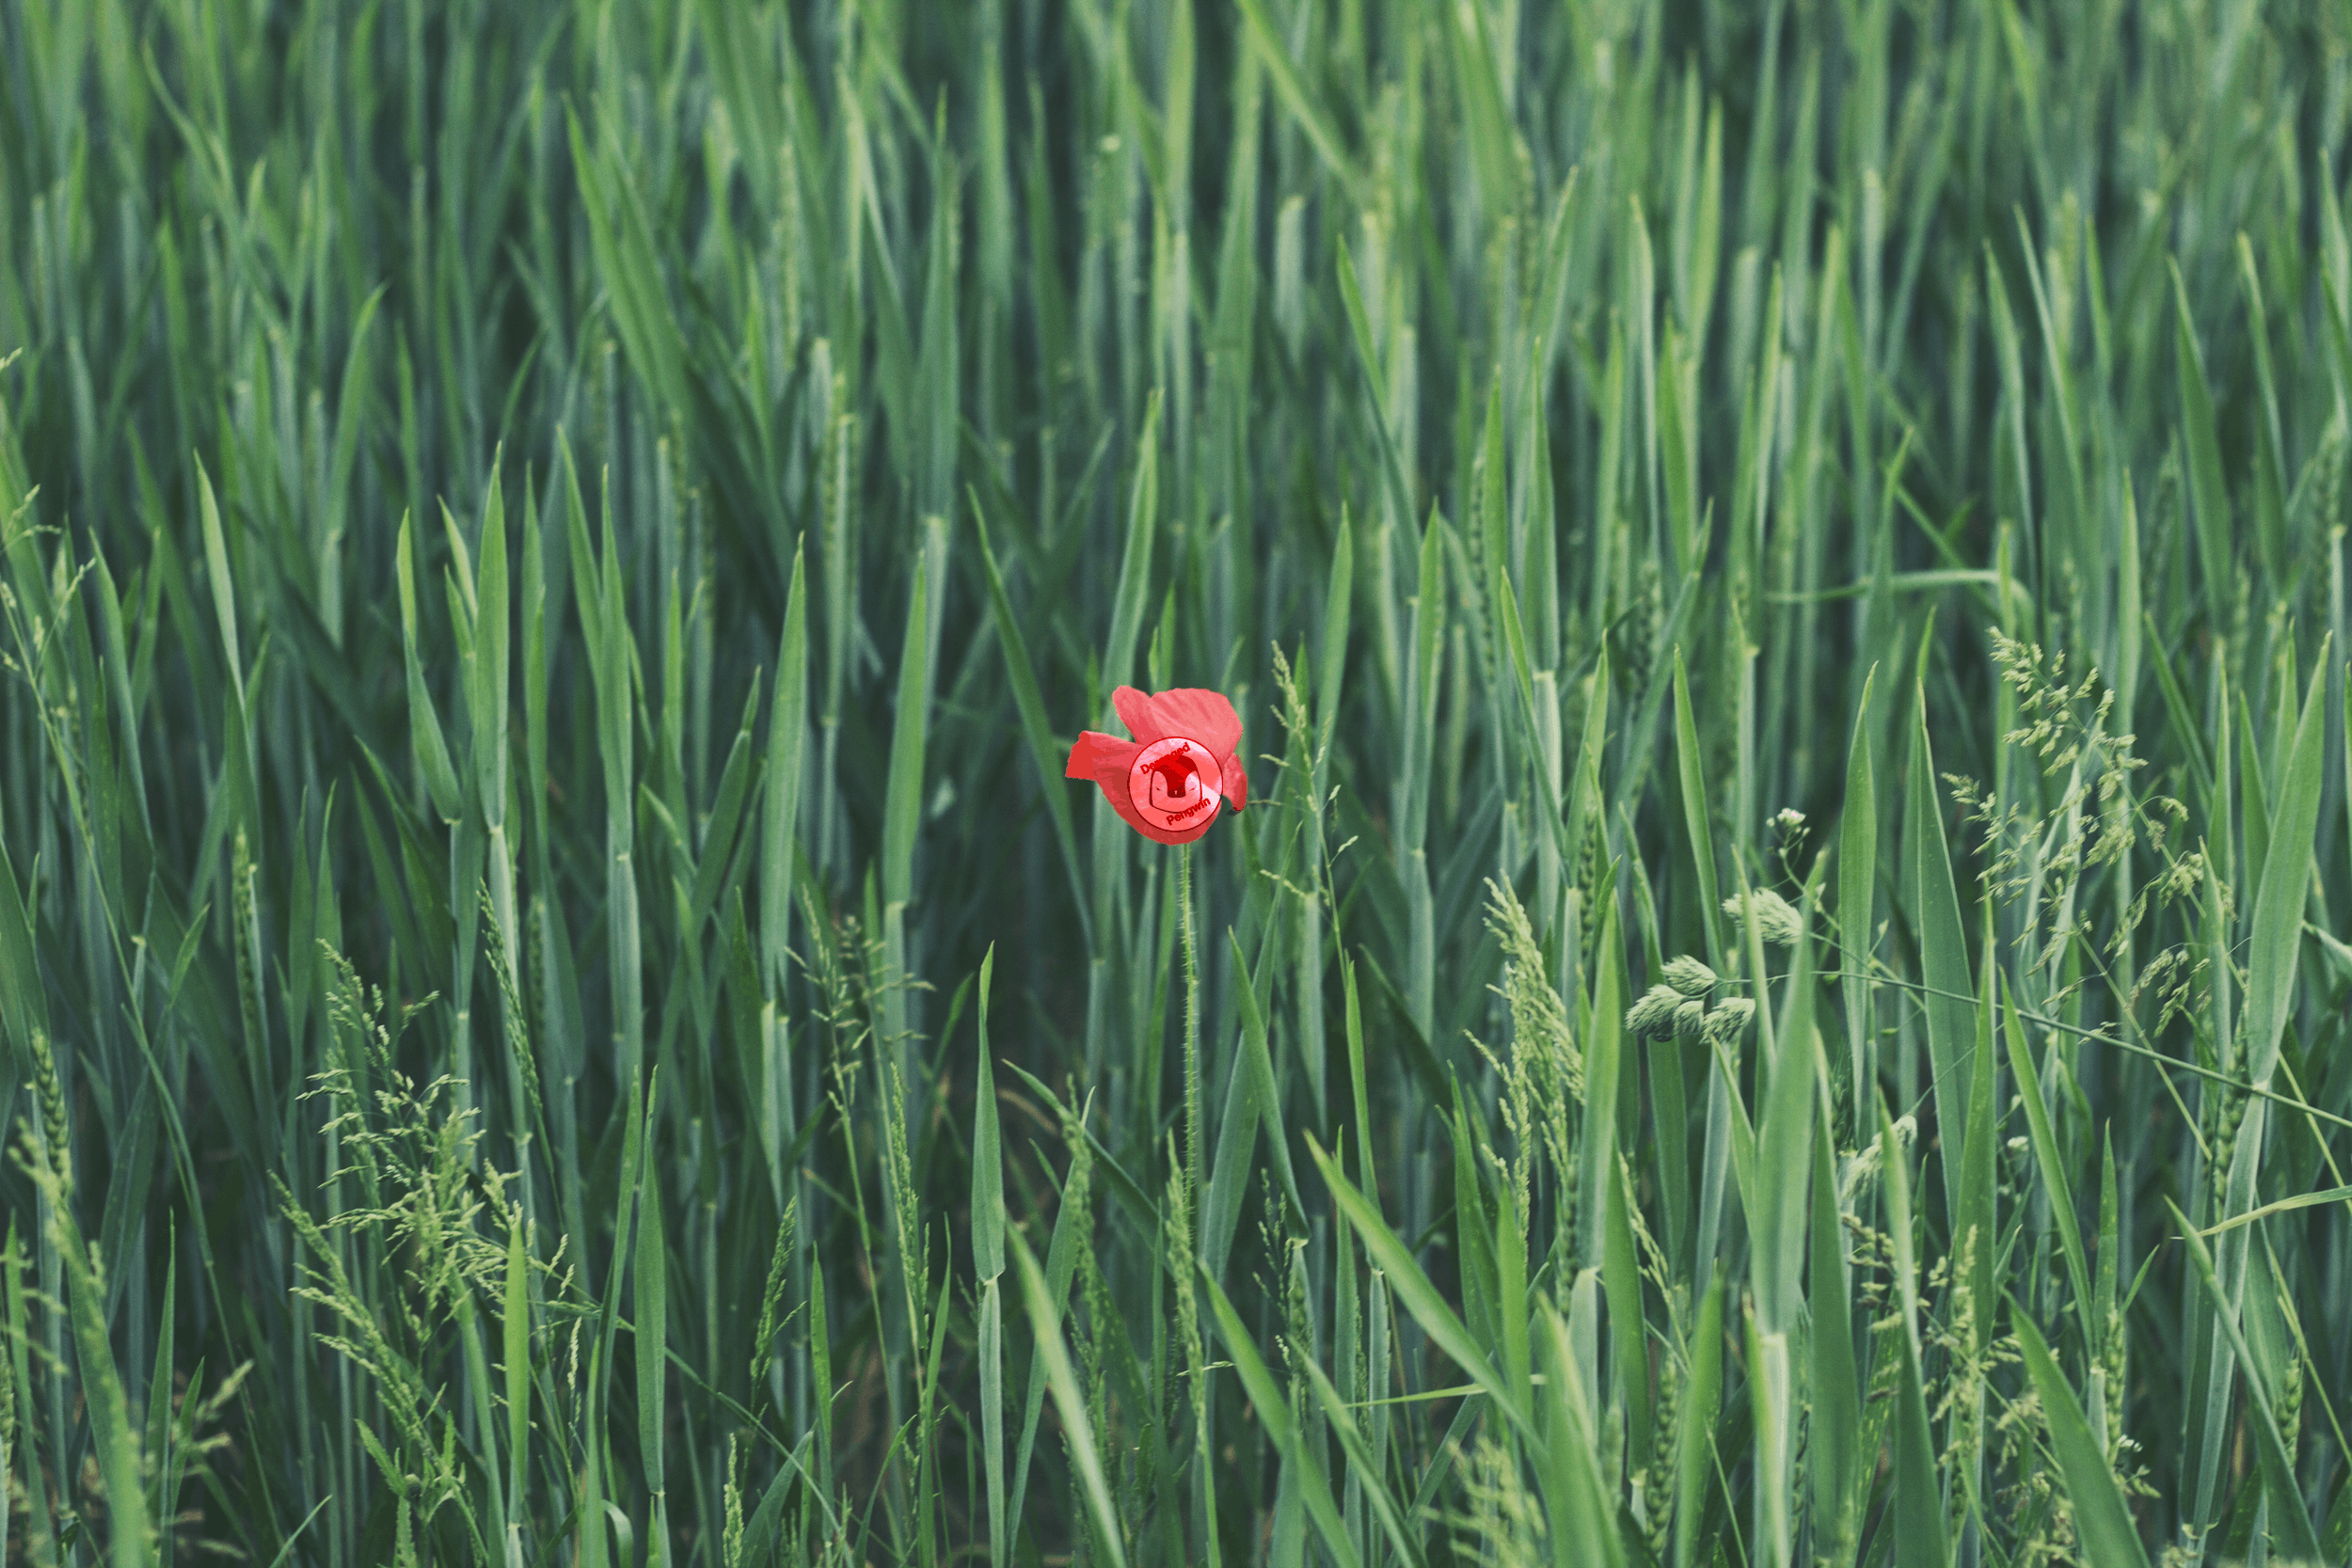 Flower in a field